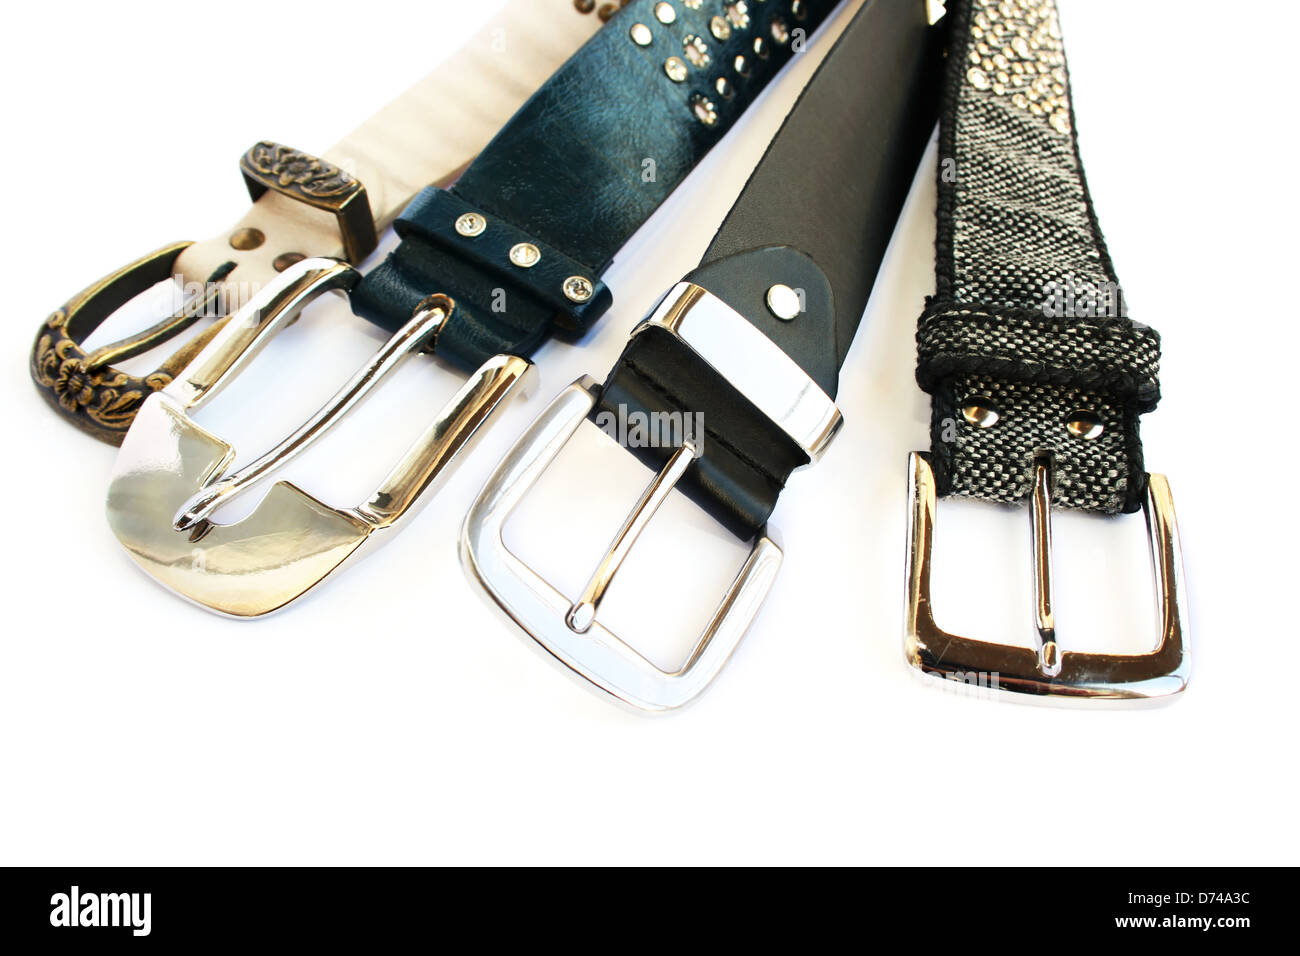 Fashionable belts isolated on white background. Stock Photo